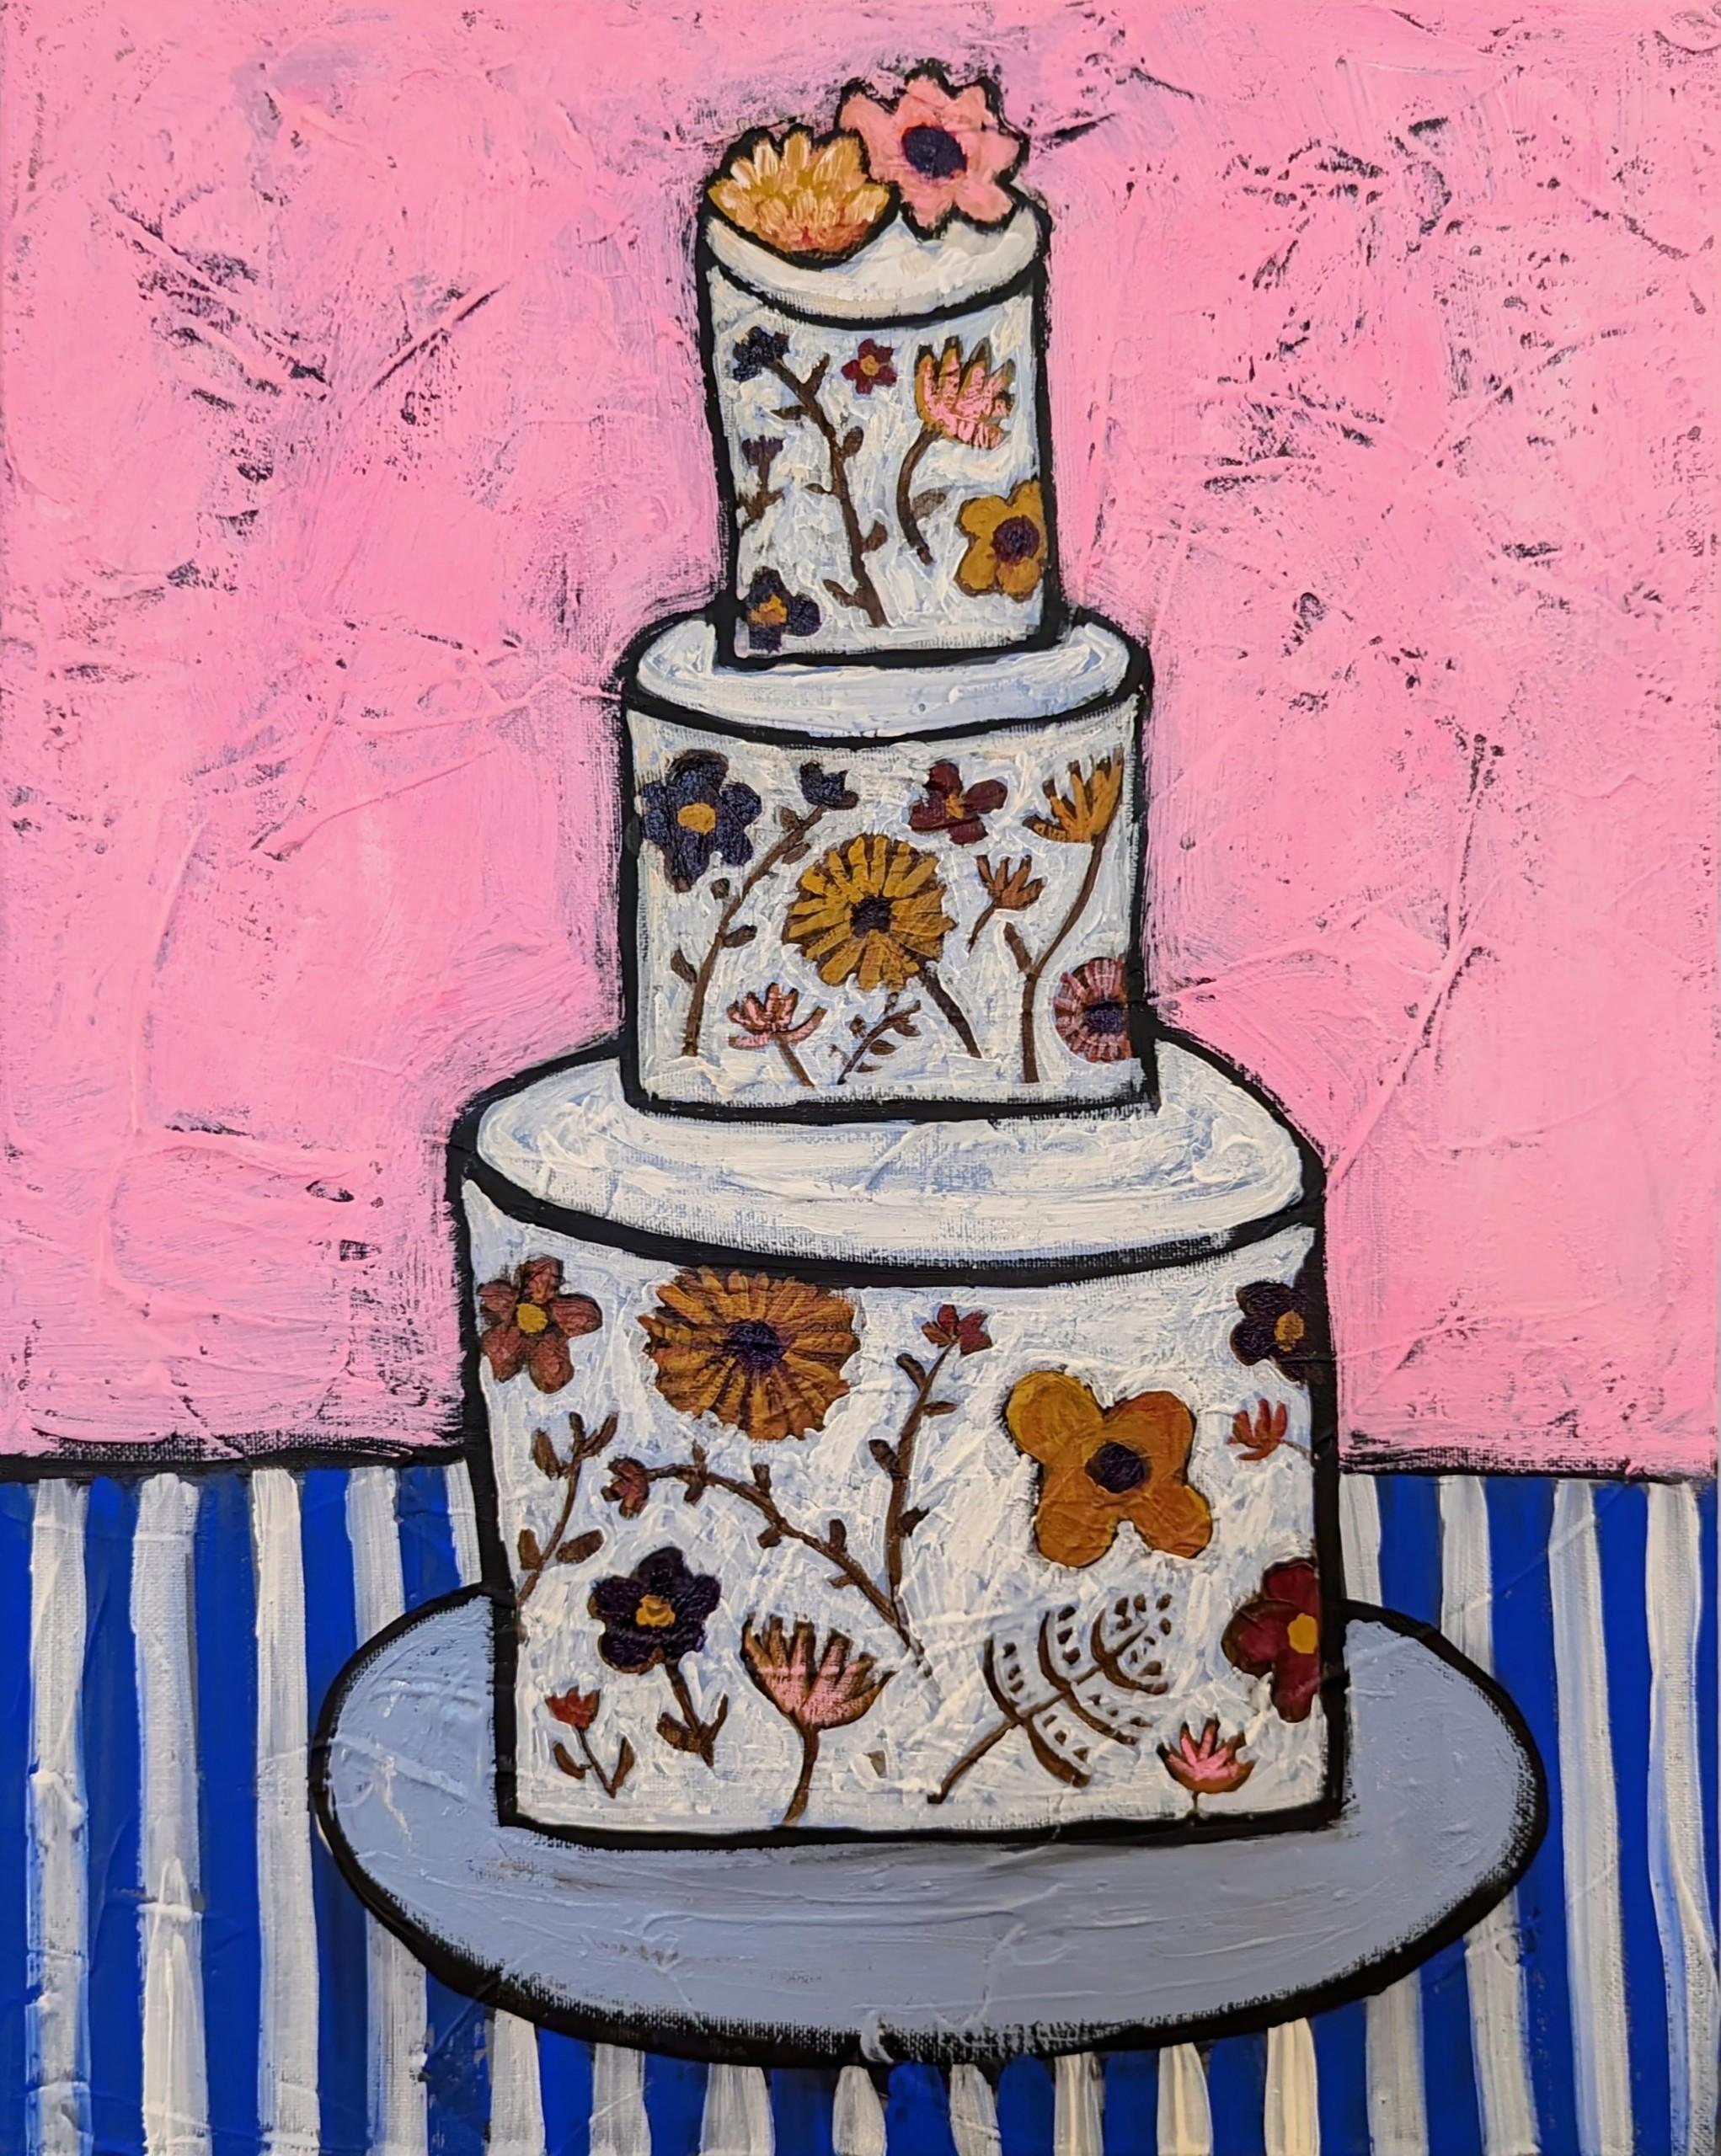 Unglaubliche Edible Flower Cake, helles Stillleben Lebensmittelkunst, zeitgenössische Pop-Art